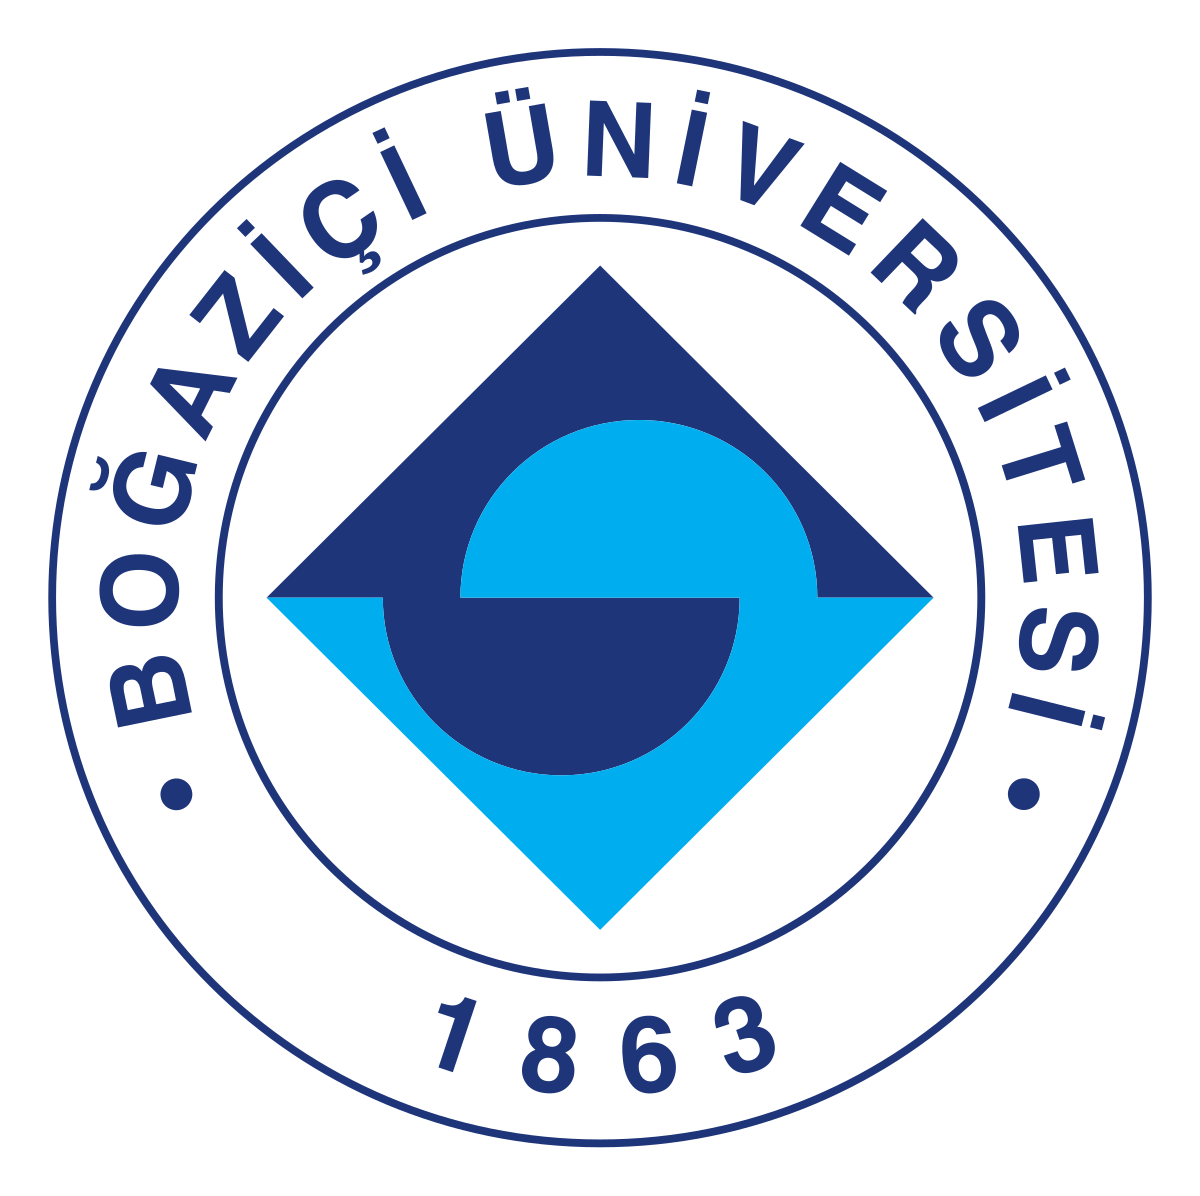 File:Boğaziçi University logo.svg - Wikipedia